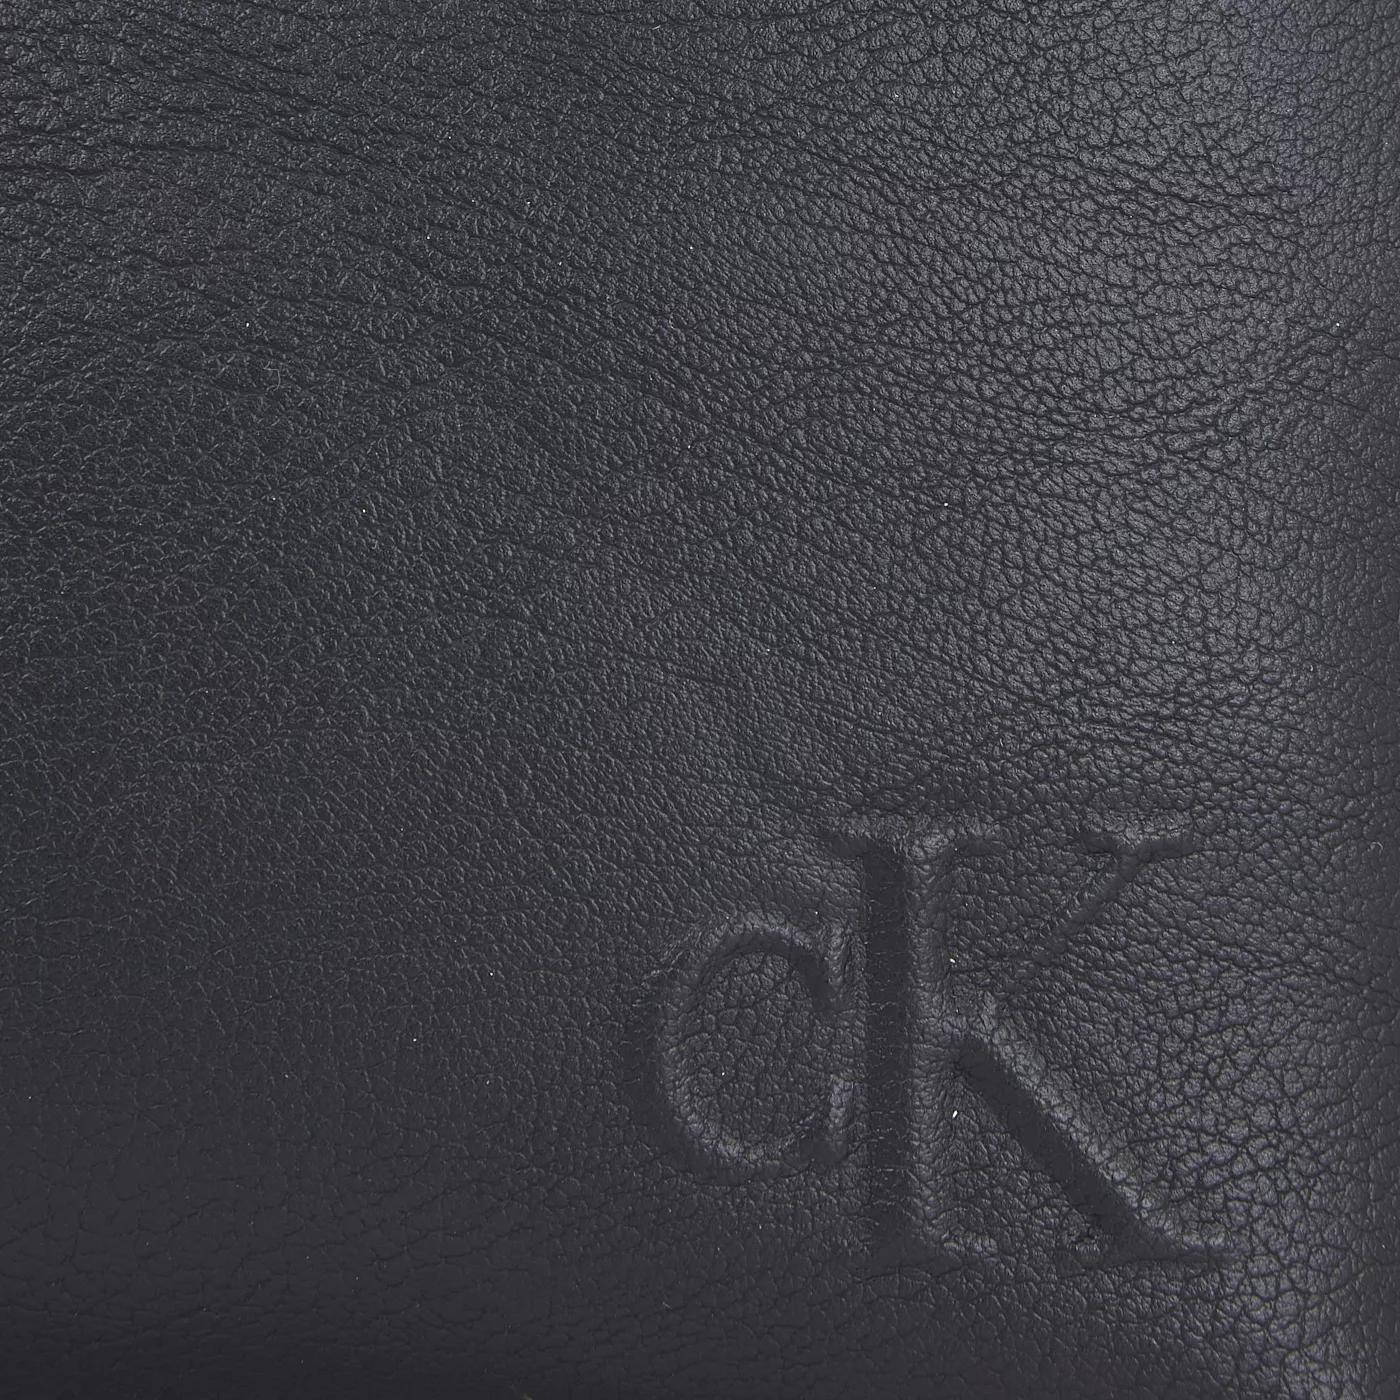 Calvin Klein Crossbody bags Ultralight Schwarze Handtasche K60K61 in zwart